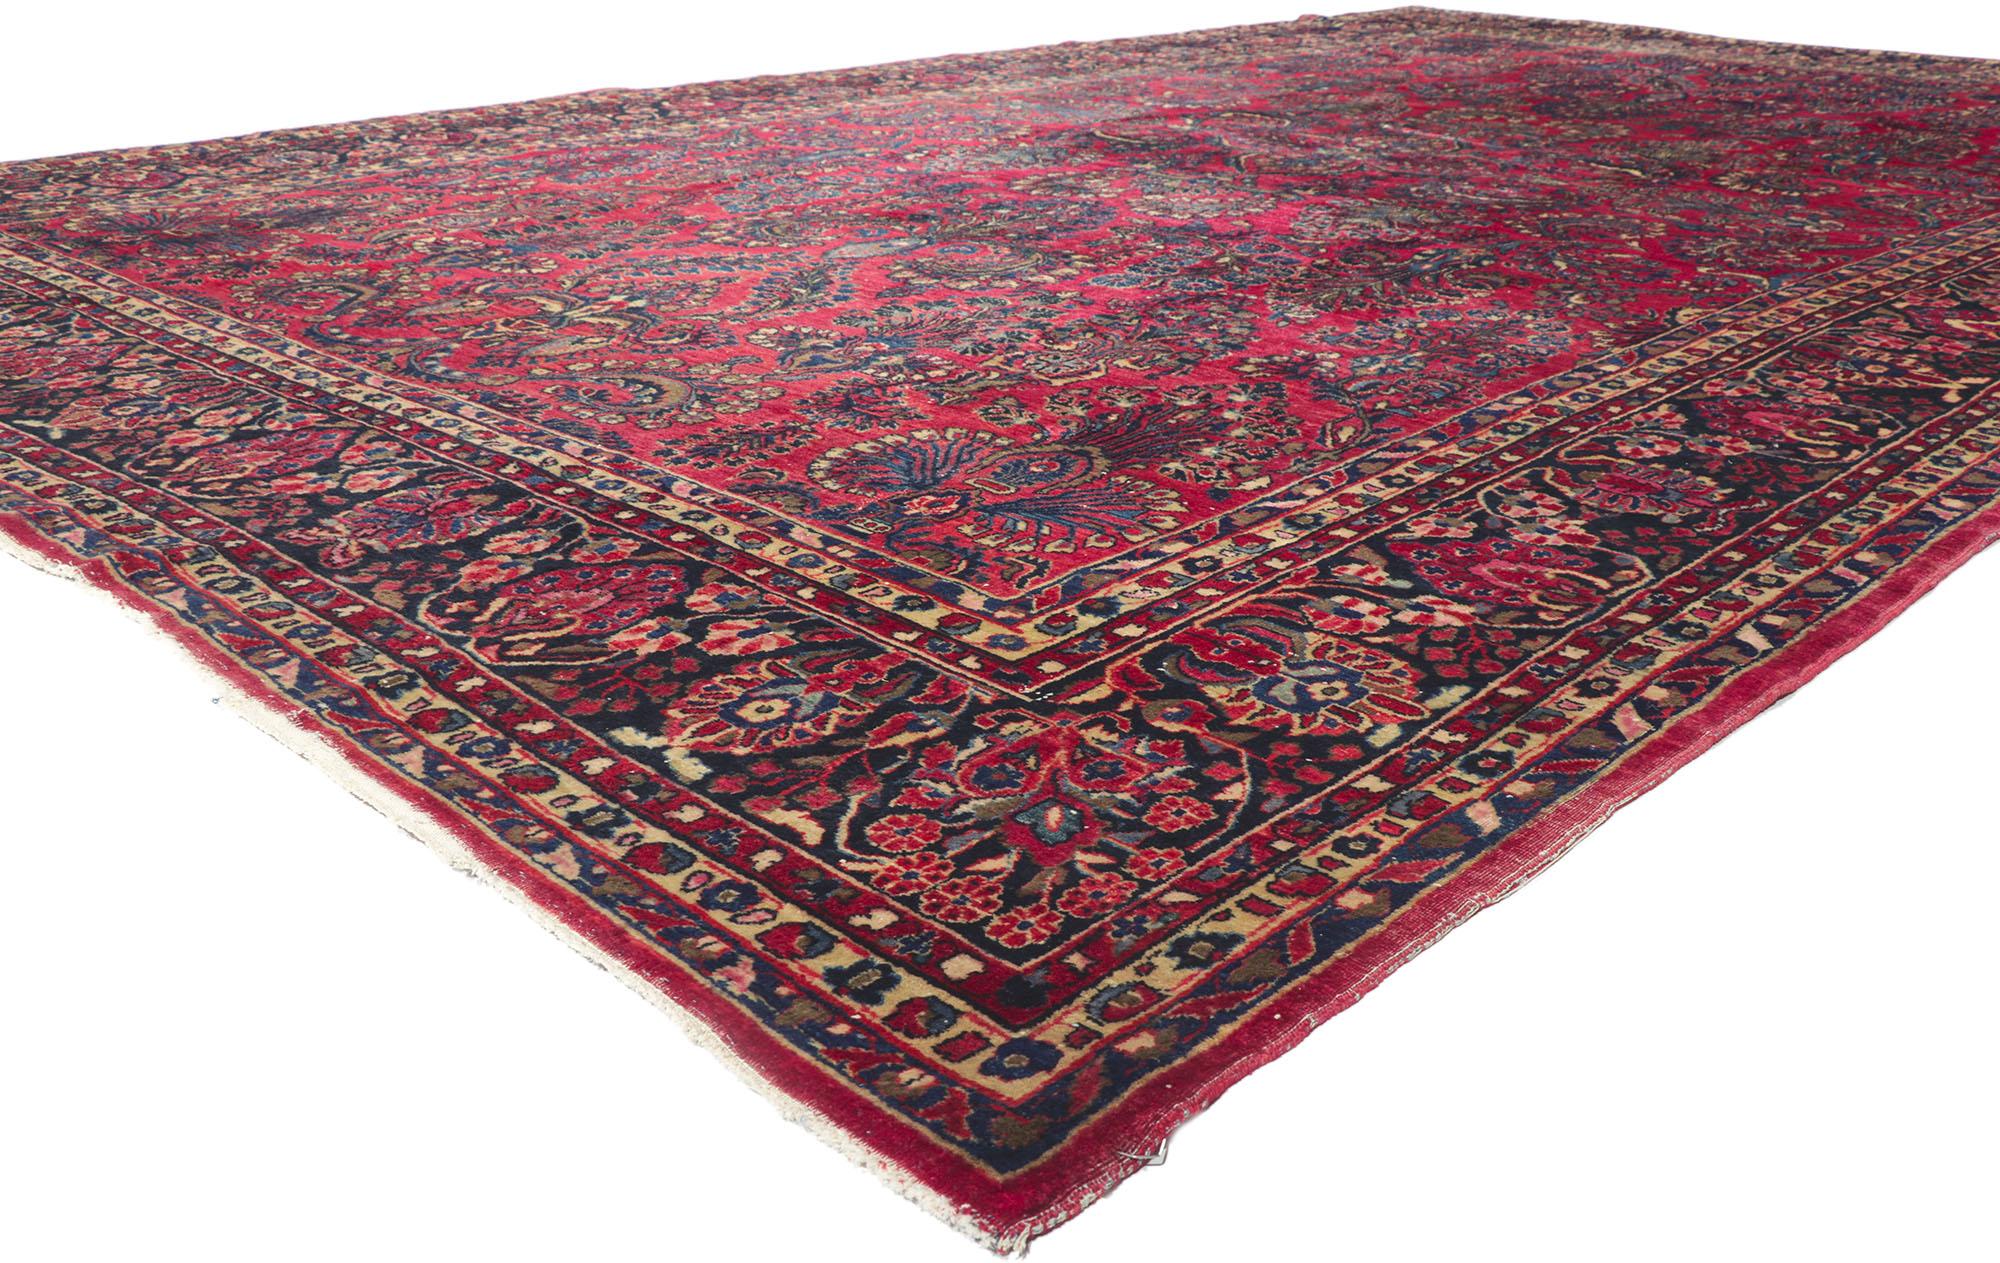 78223 antiker persischer Sarouk-Teppich in Zimmergröße 10'01 x 16'08.
In verschiedenen Rot-, Marineblau-, Braun-, Königsblau-, Cerulean-, Hellbraun-, Rosa-, Rosé- und Taupe-Tönen mit anderen Akzentfarben gehalten. Wünschenswerter Altersverschleiß.